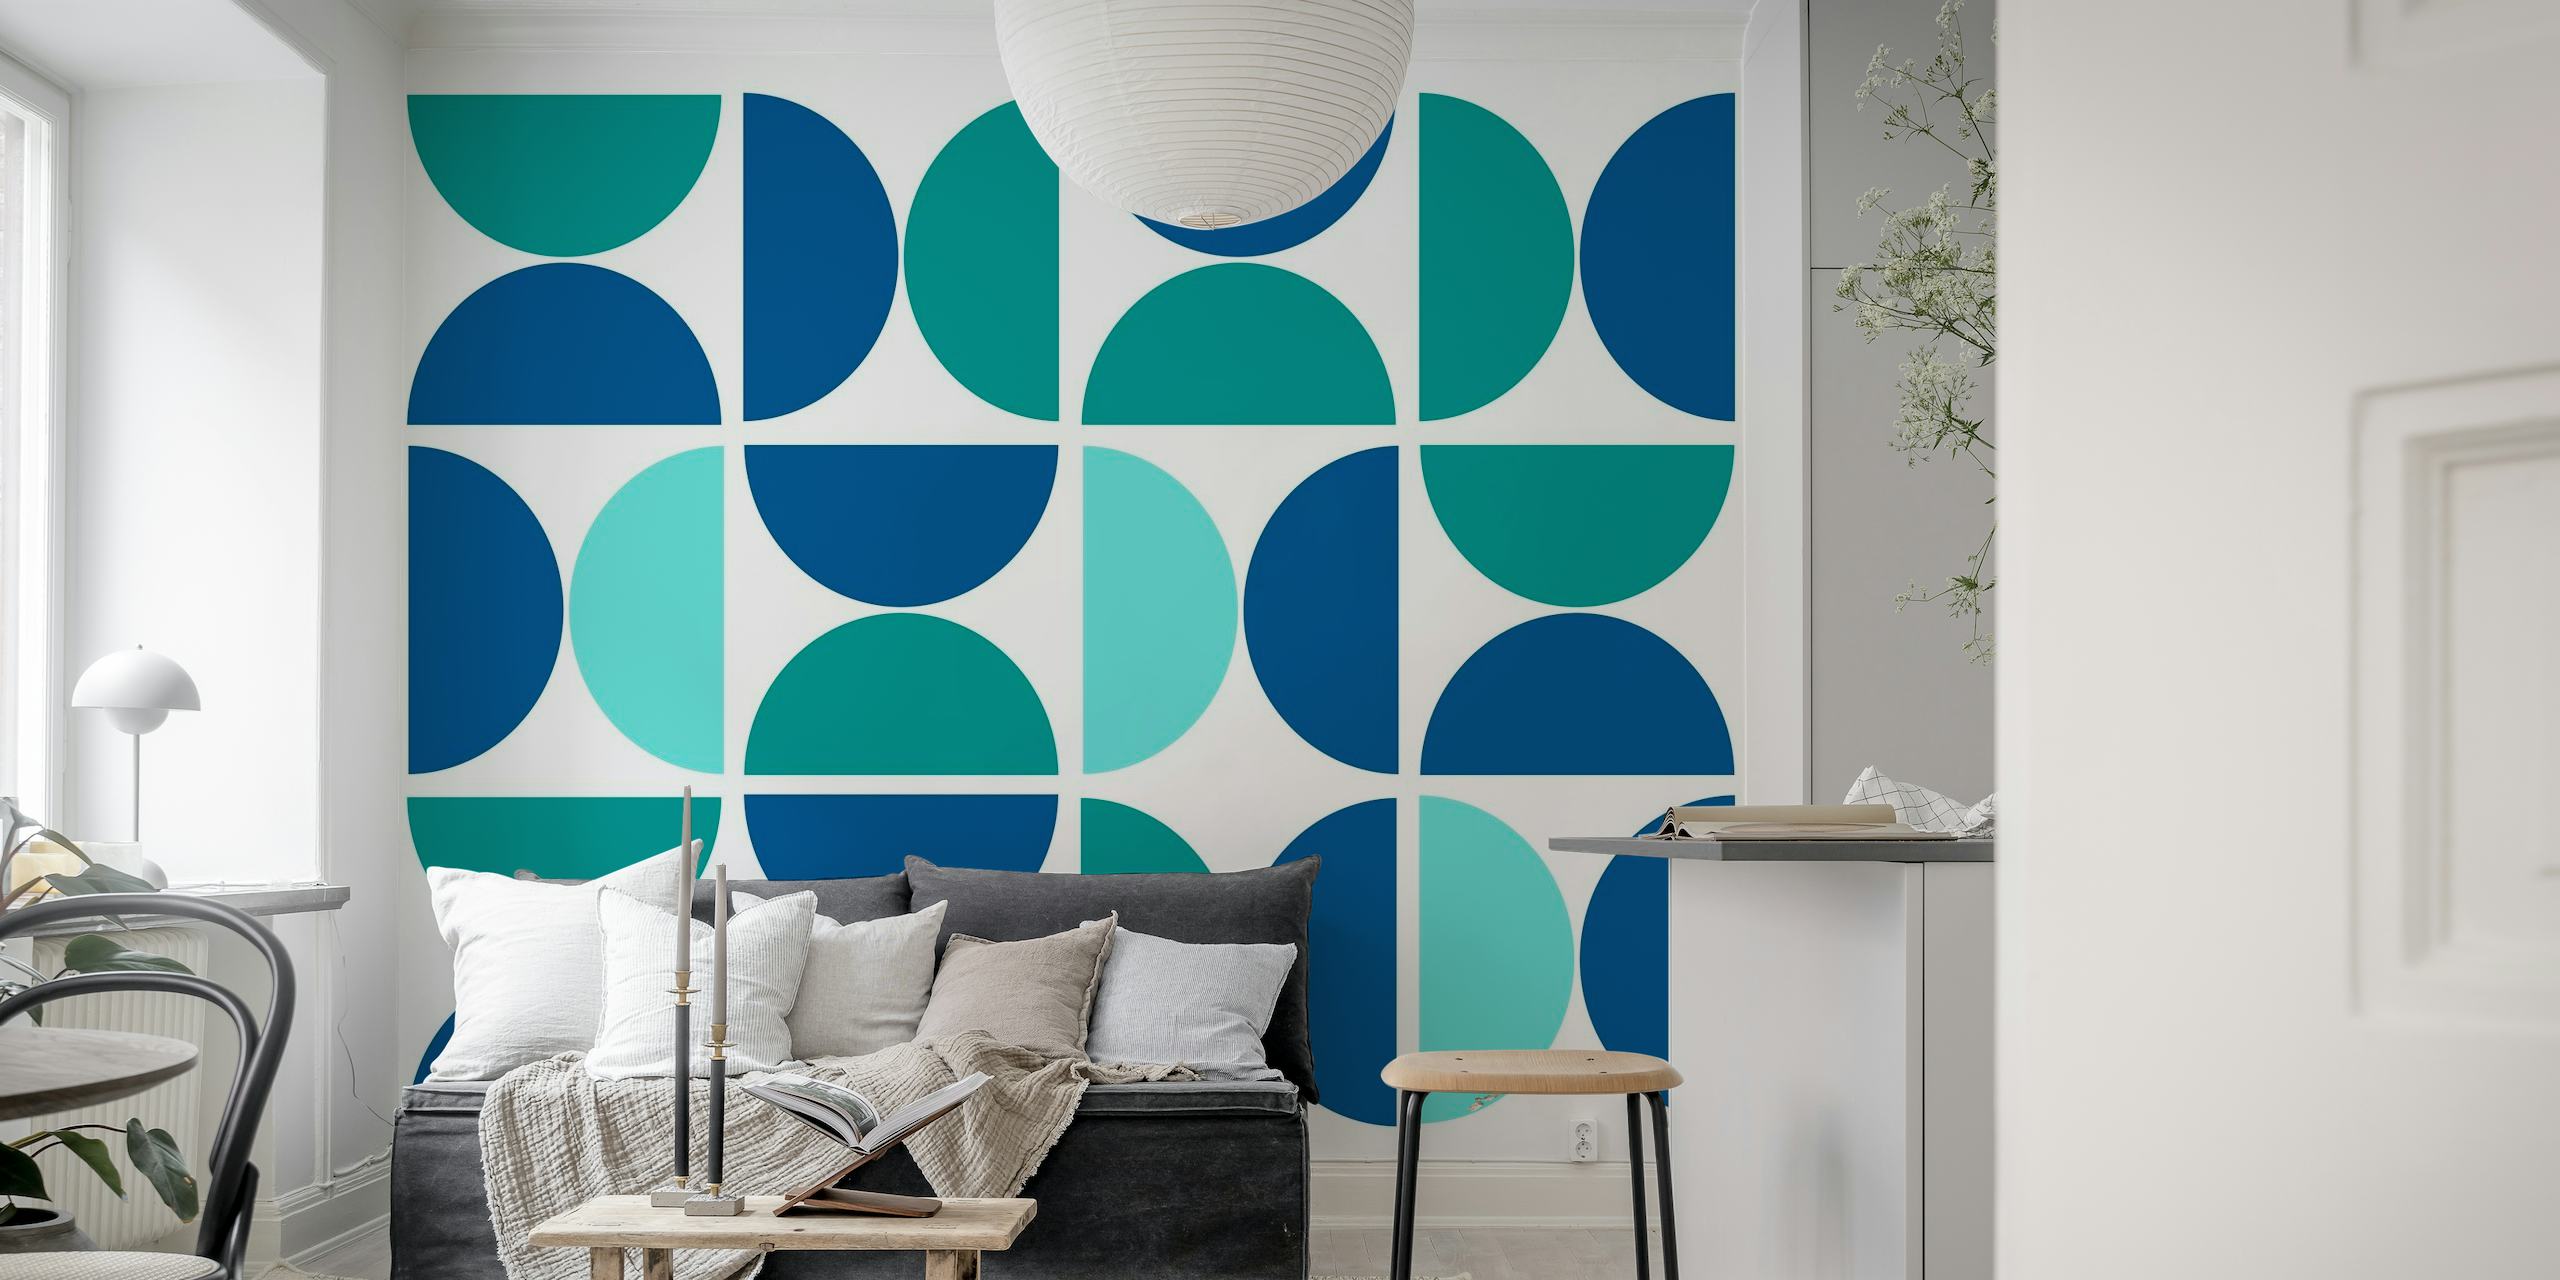 Muurschildering met geometrisch patroon met overlappende cirkels in blauwtinten